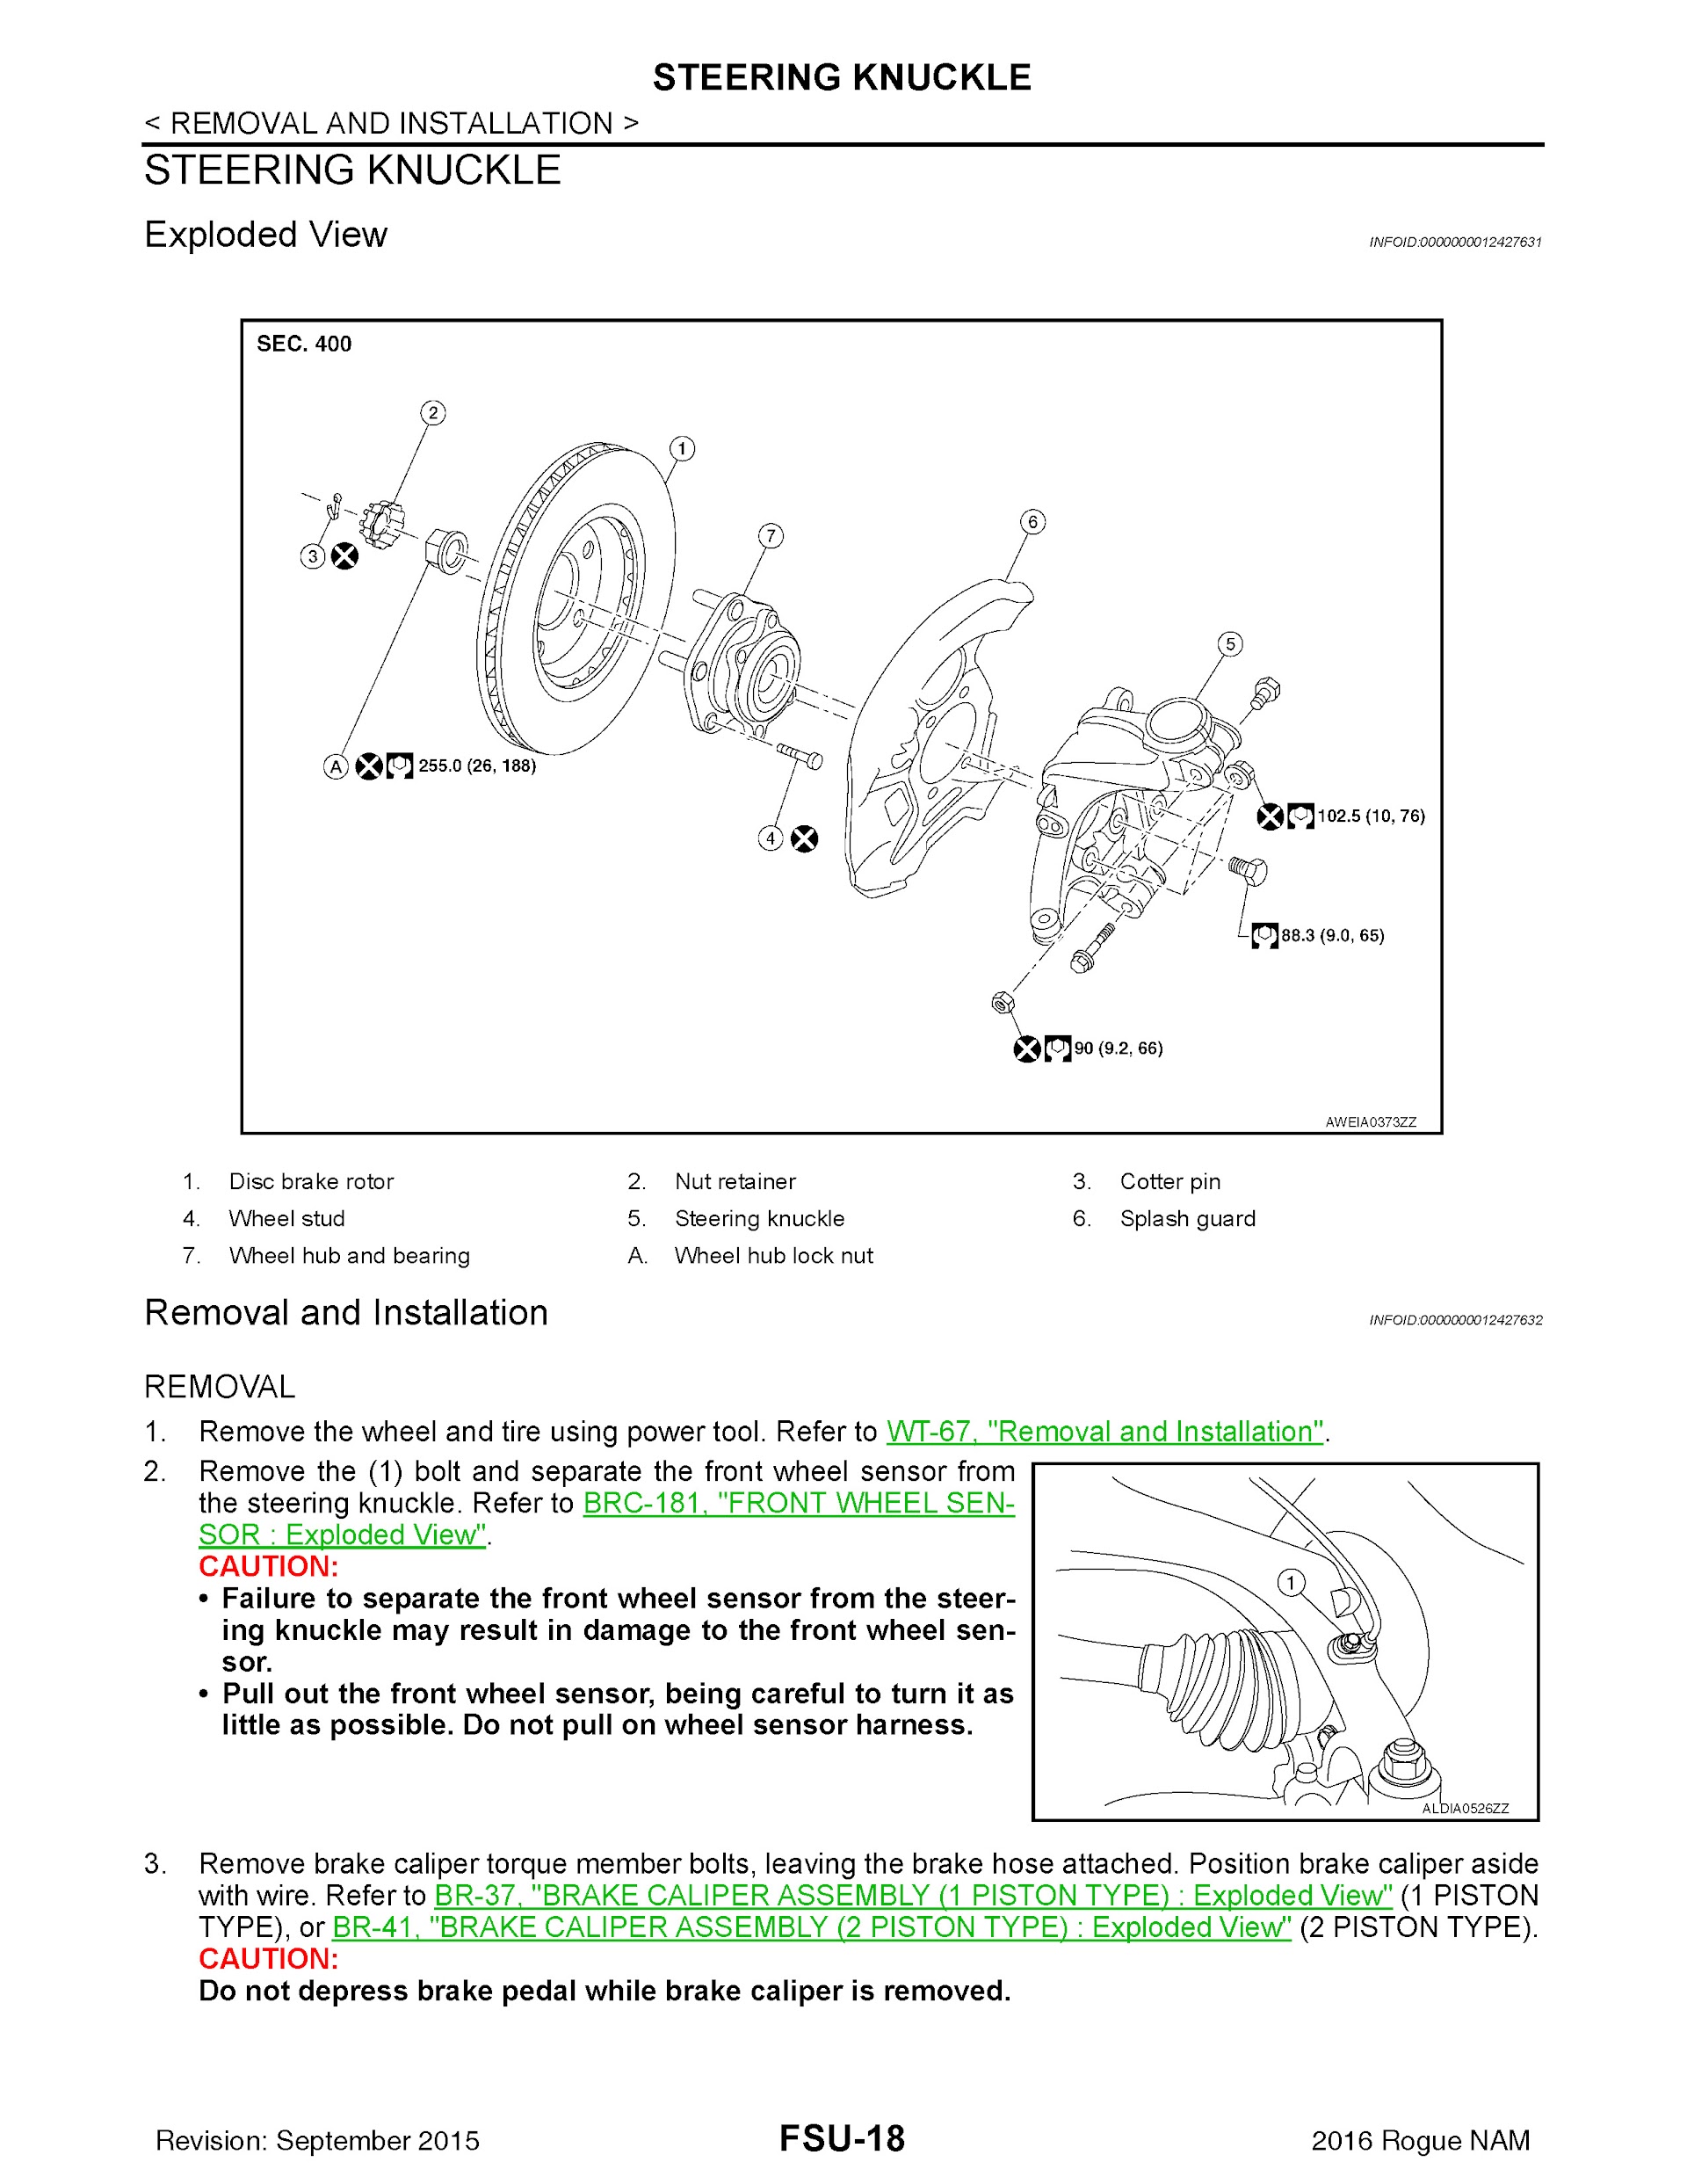 2016 Nissan Rogue T32 Repair Manual, Steering Knuckle